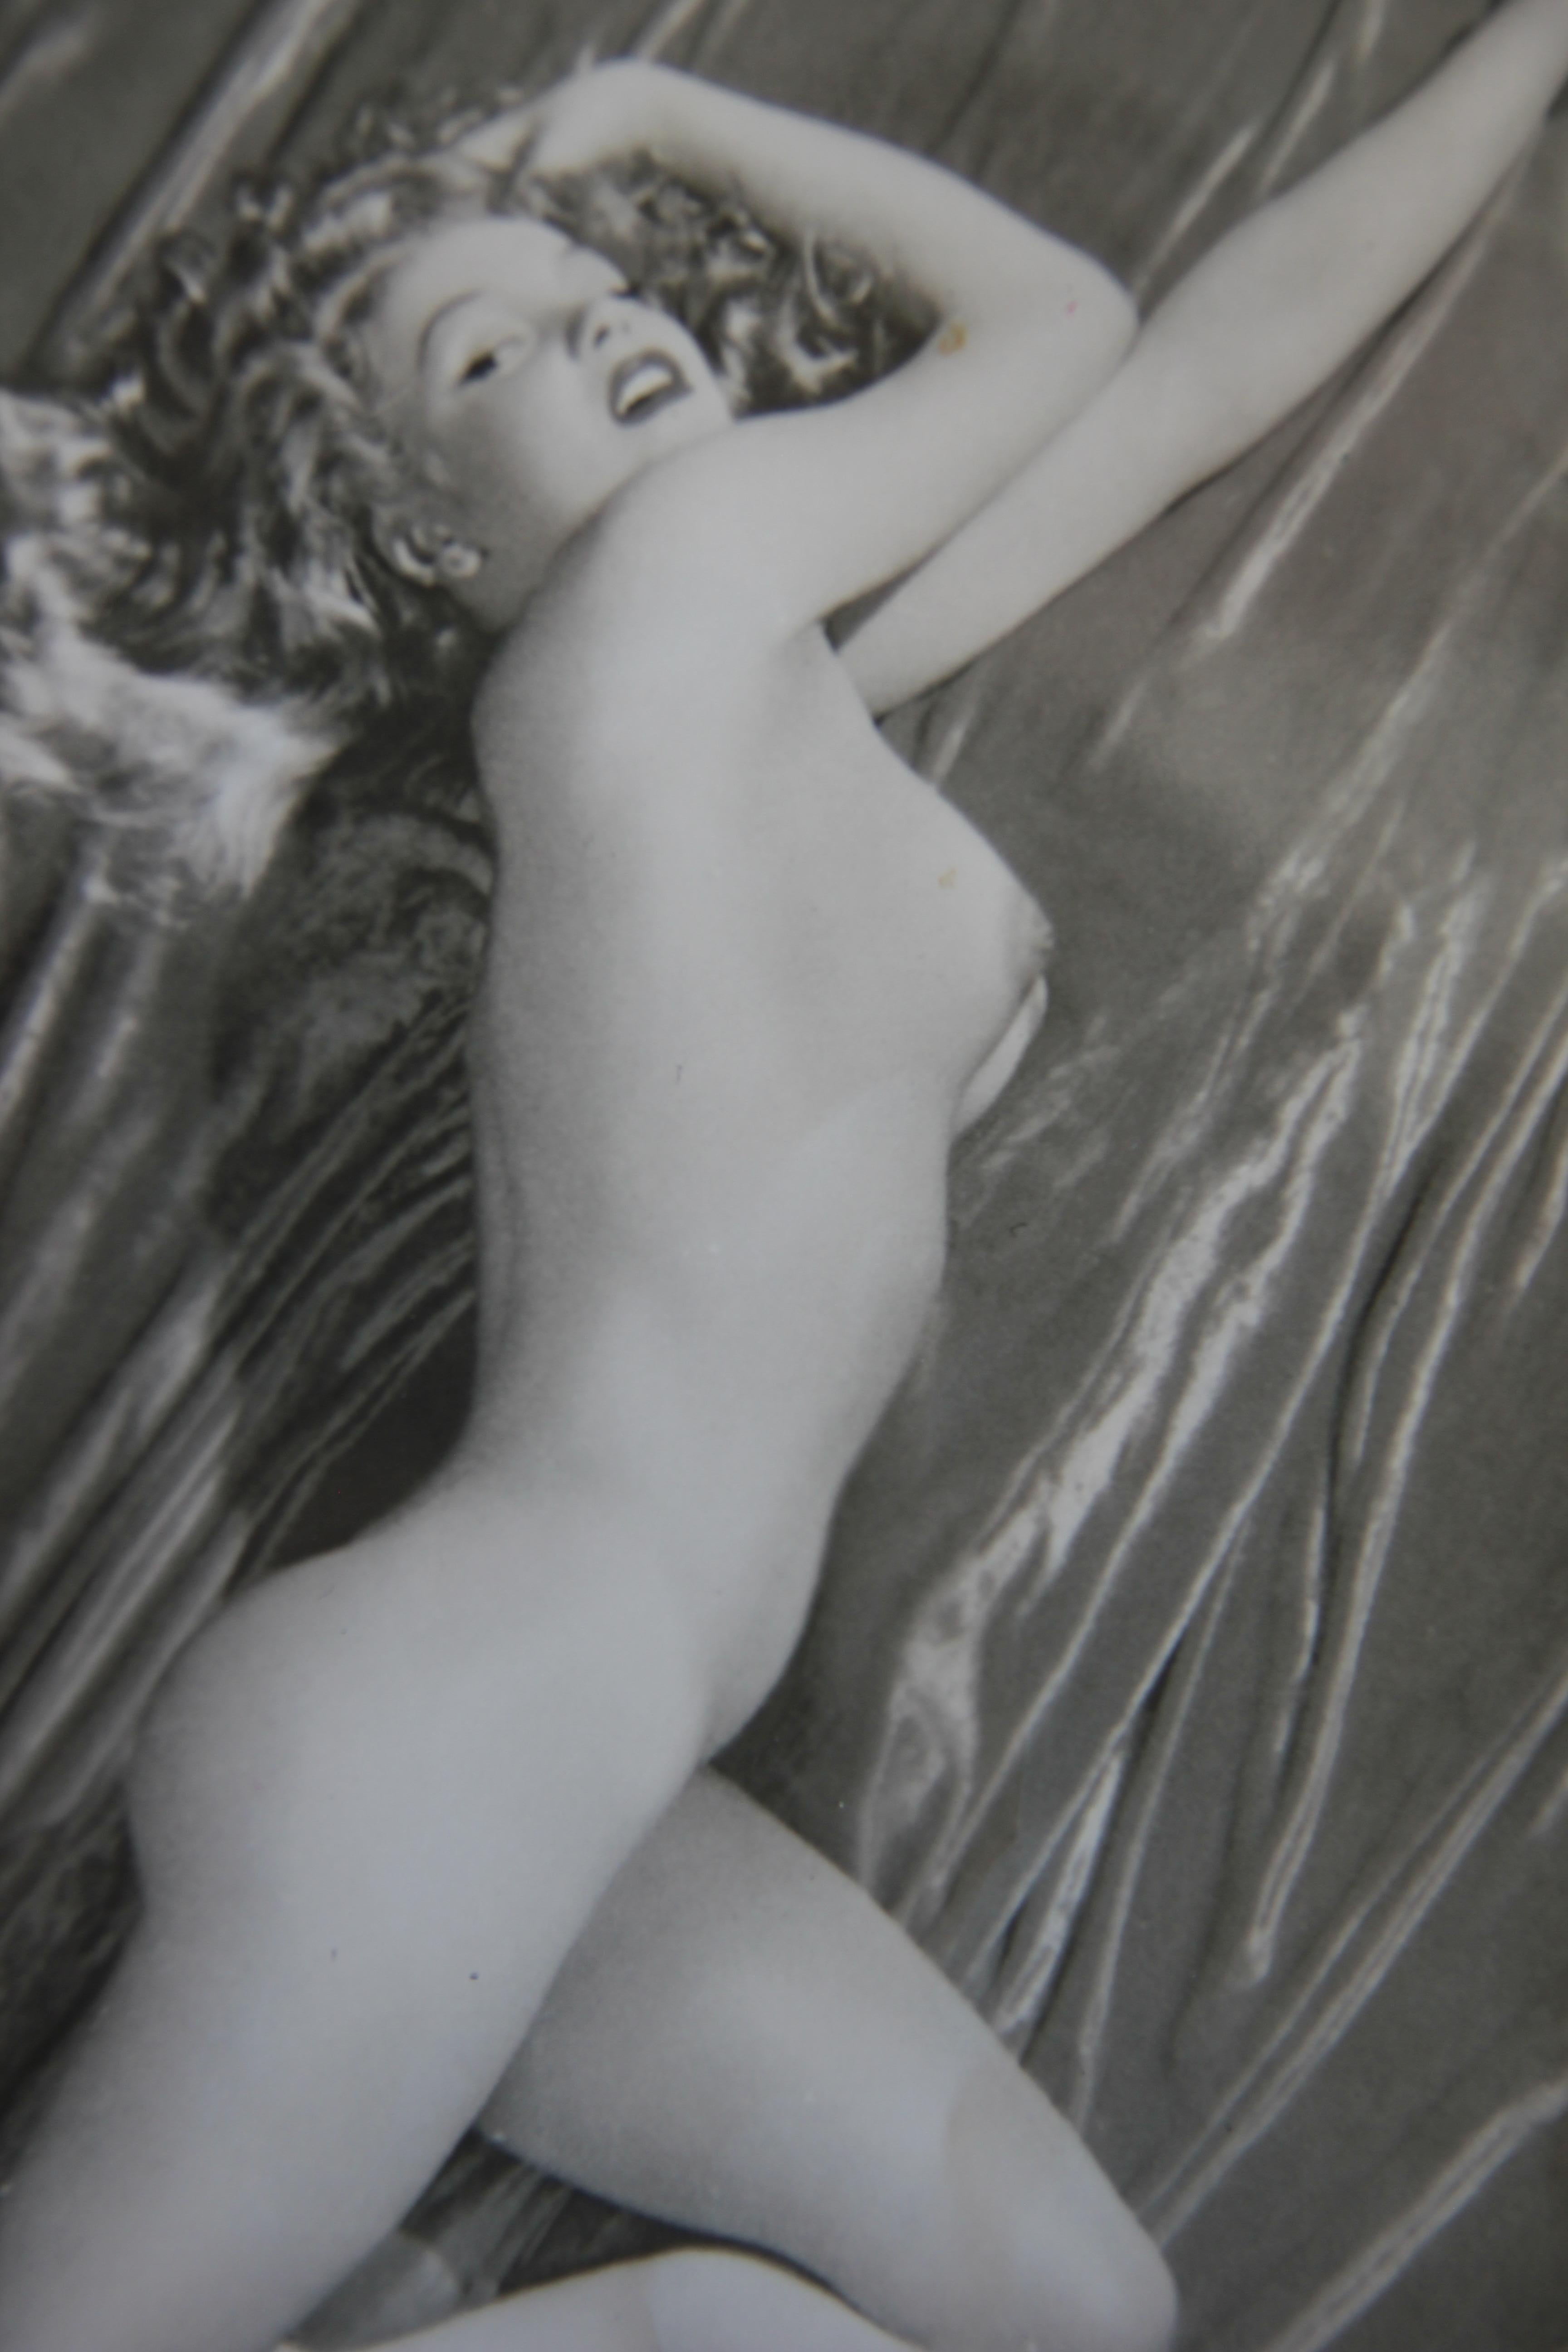 Fotografie von Marilyn Monroe, Aktfotografie, Pose 2 (Moderne), Photograph, von Tom Kelly